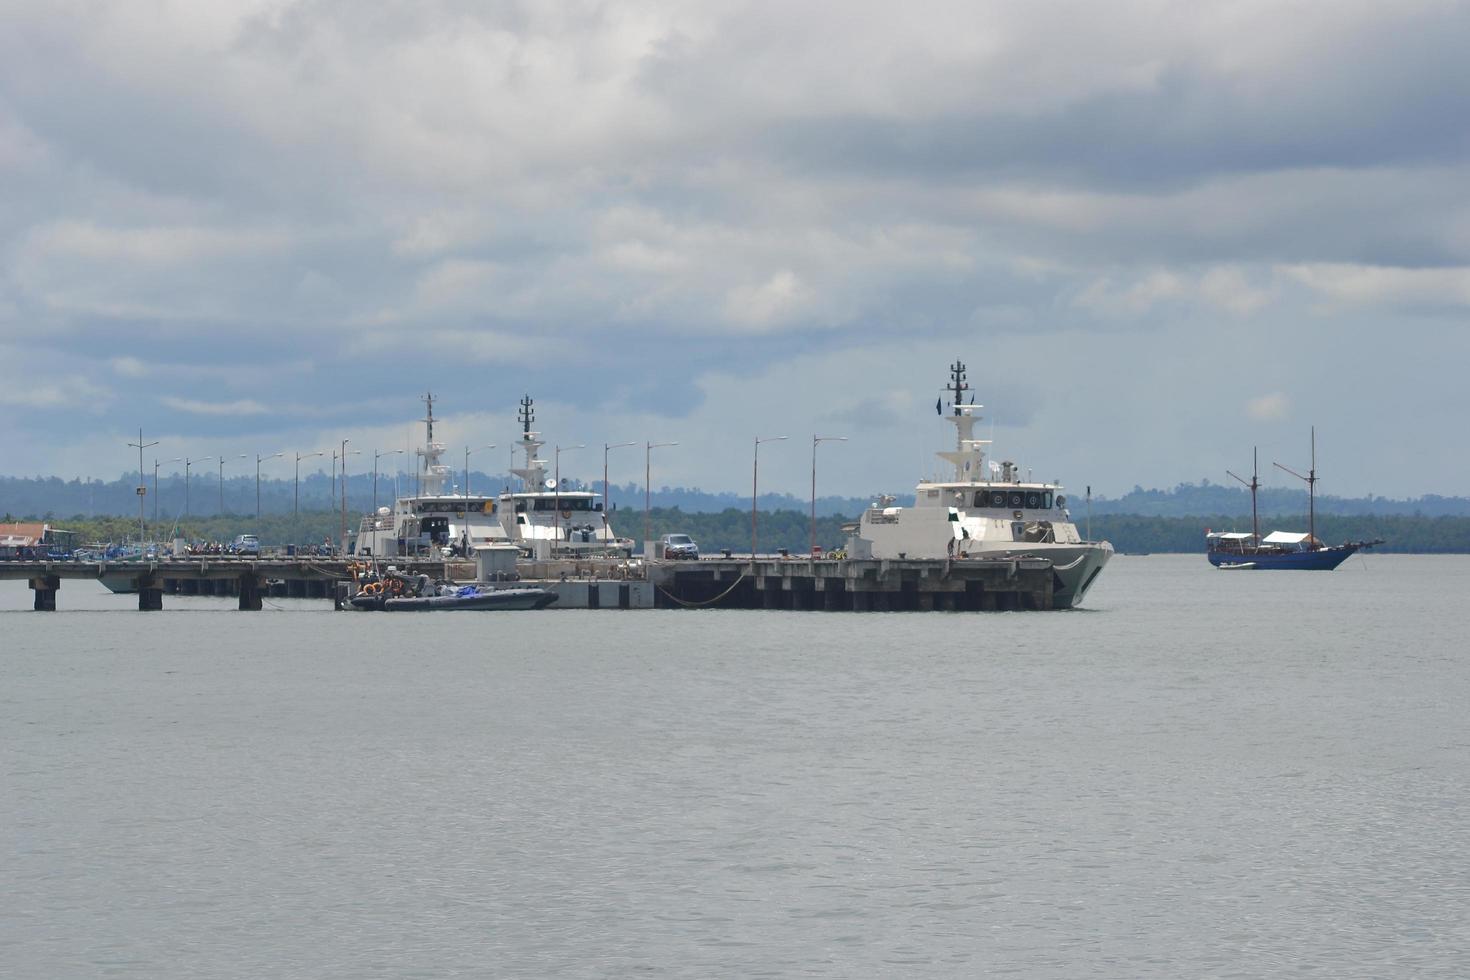 sorong, västra papua, indonesien, 2021. marina patrullbåtar förtöjer vid kajen. foto